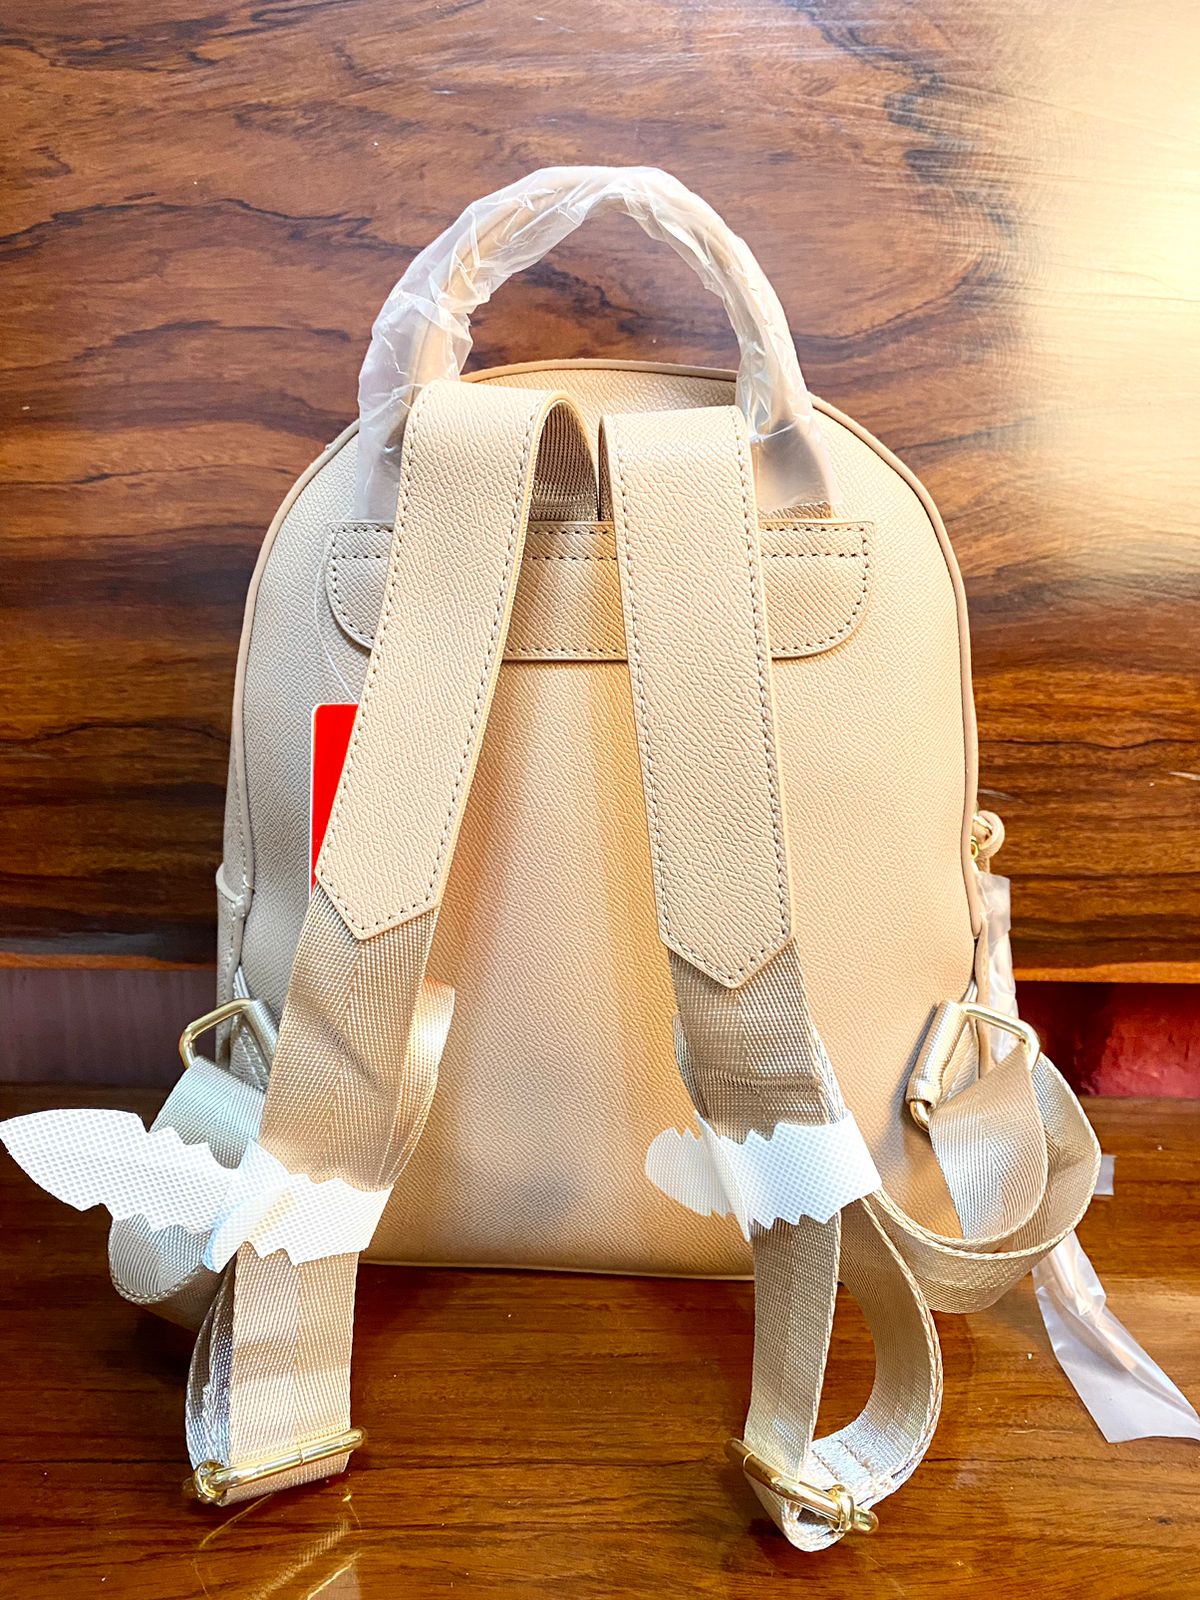 BXU HOWRU 013 Premium Backpack